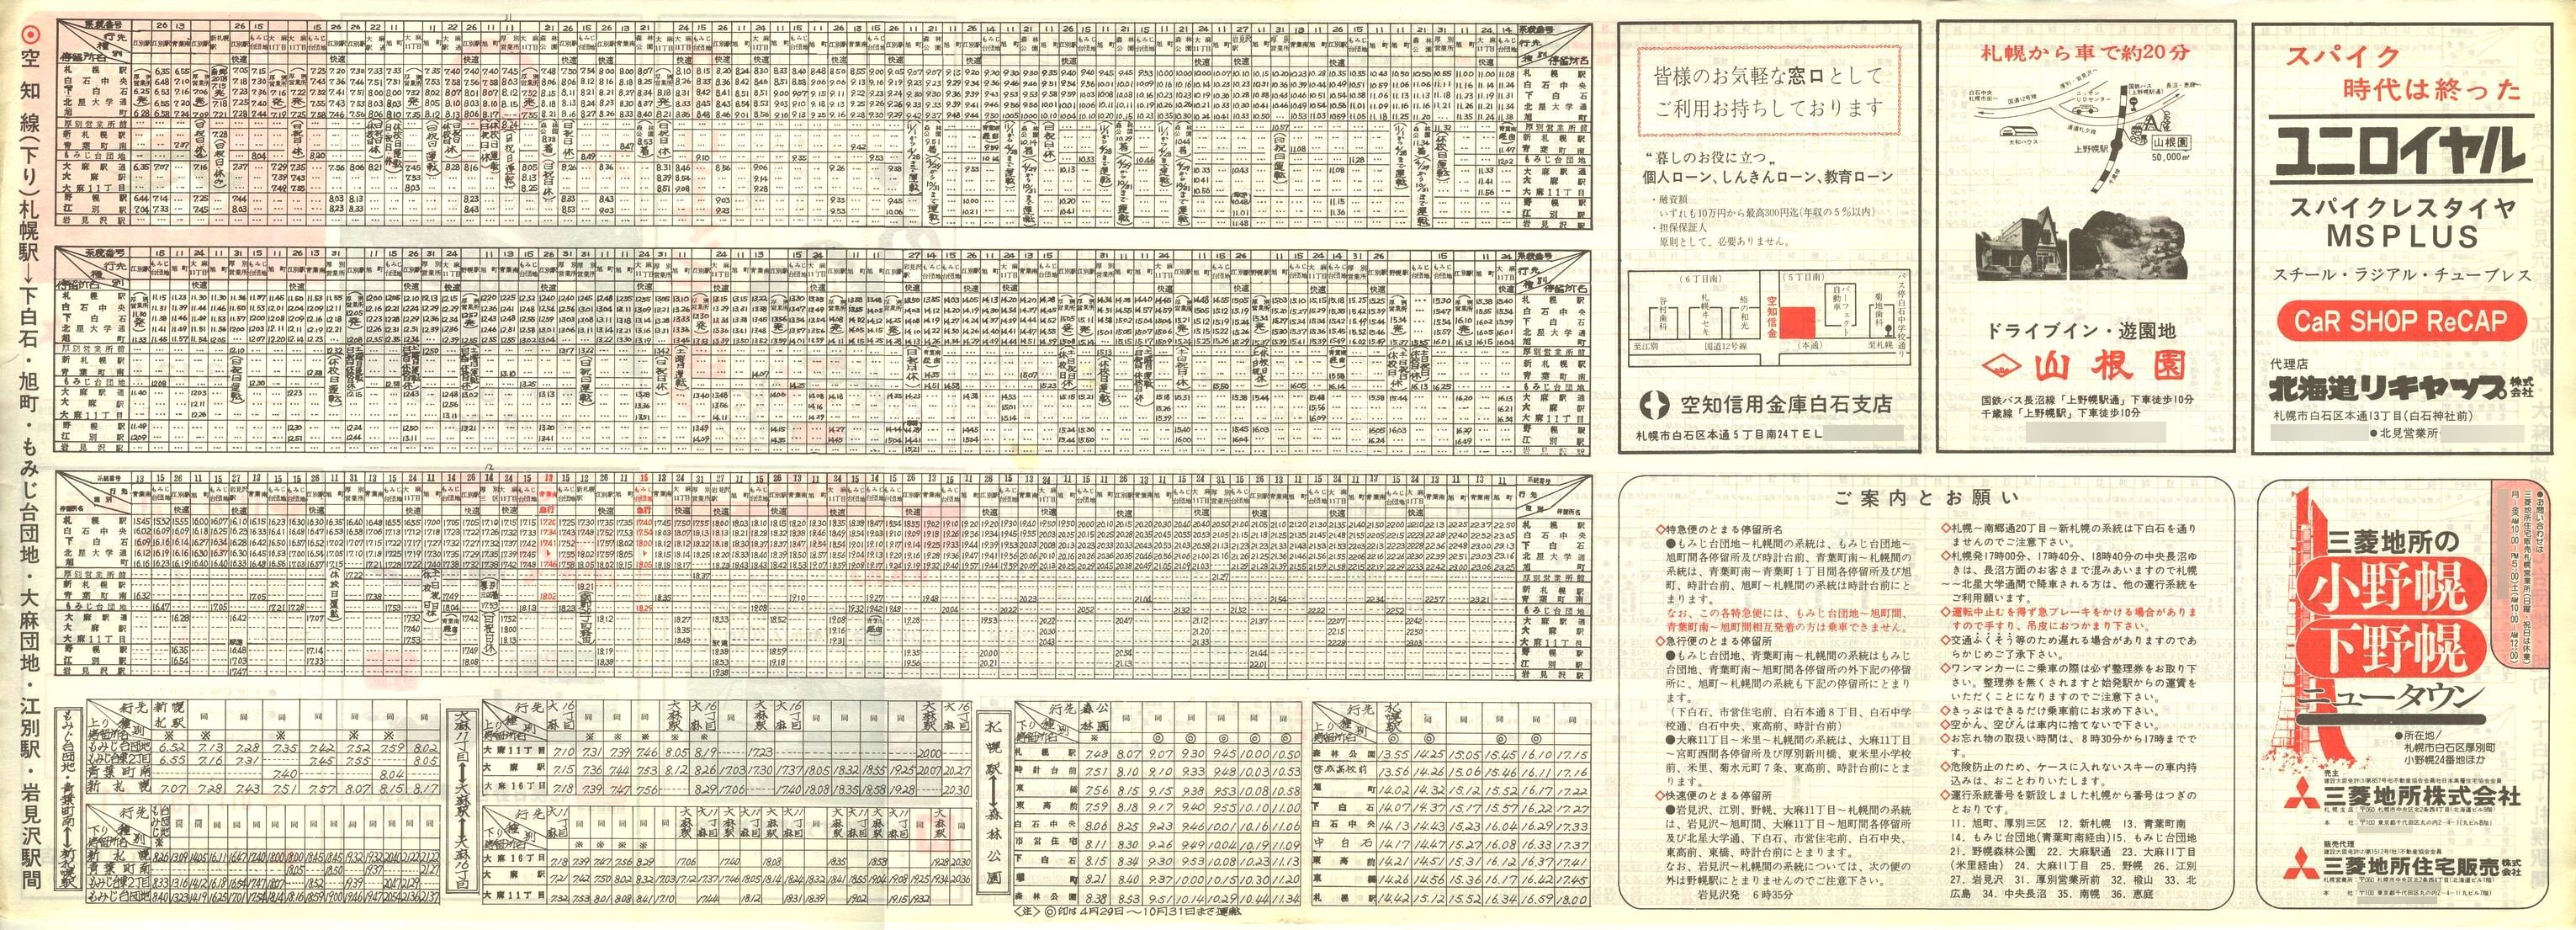 1978-12-01改正_国鉄バス_空知線時刻表裏面